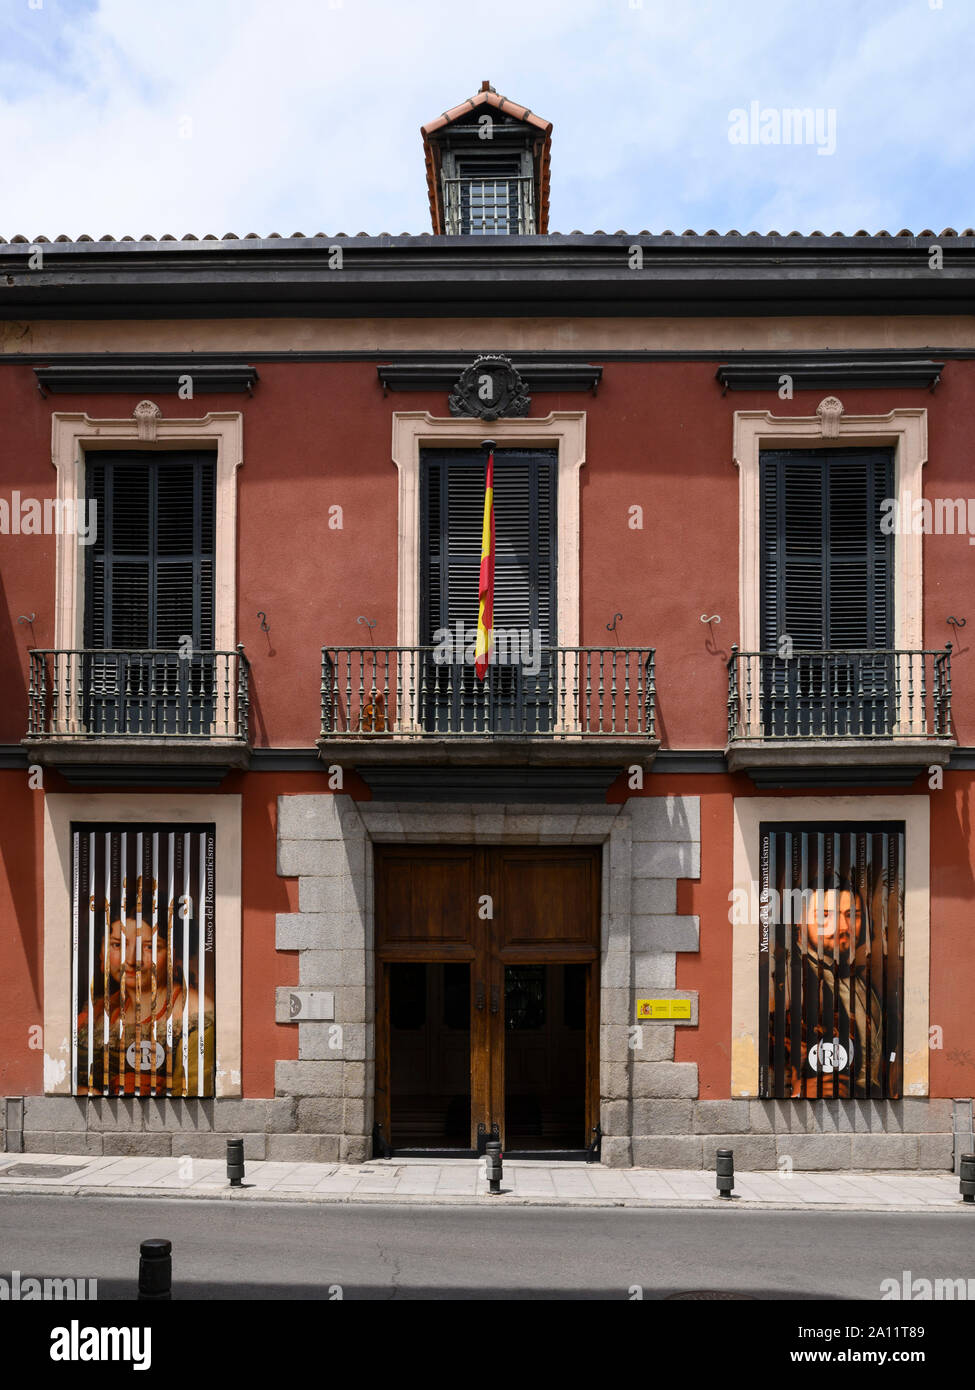 Madrid. L'Espagne. Museo del Romanticismo (Musée du Romantisme) dans une demeure du xviiie siècle palais néo-classique une fois administré par le marquis d'Matallanare Banque D'Images